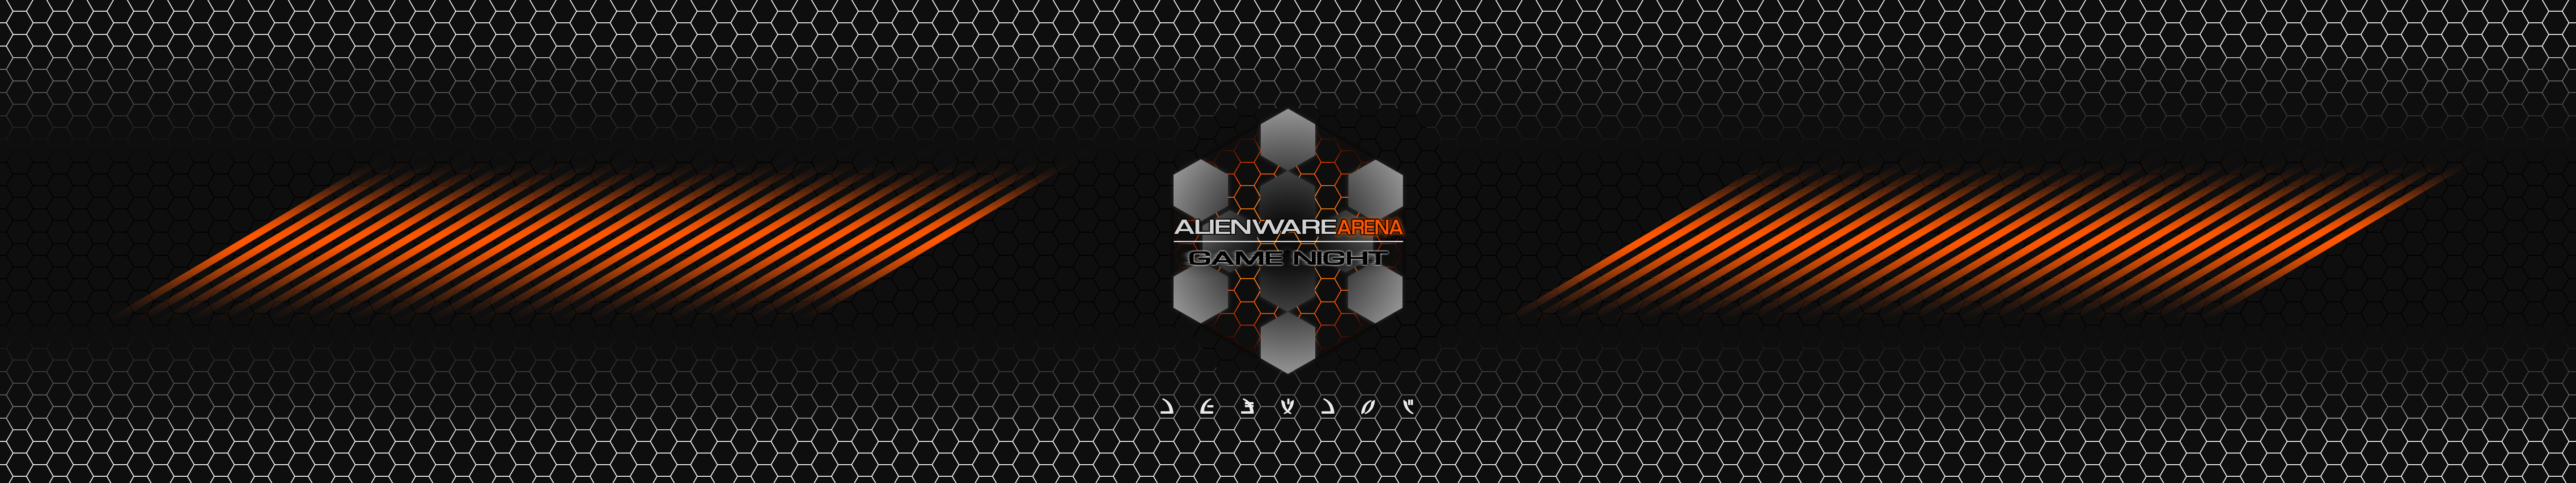 Hive Wallpaper White Blue And Black Orange Alienware Arena